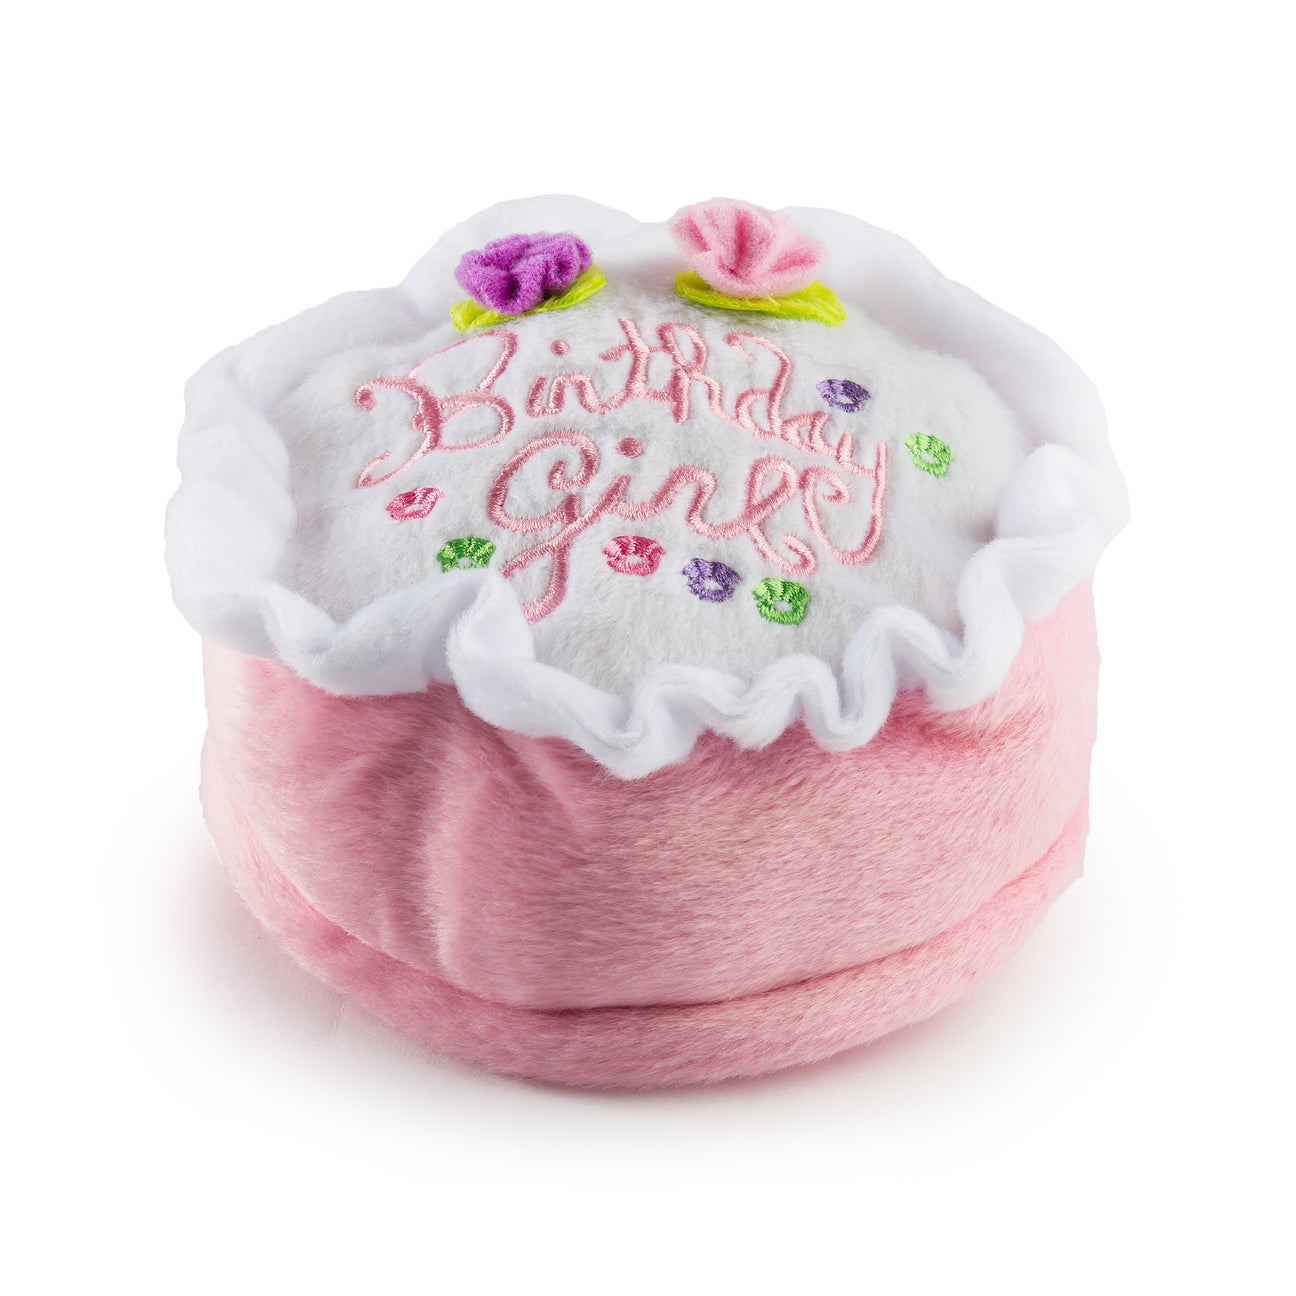 Birthday Cake Plush Toy Mini